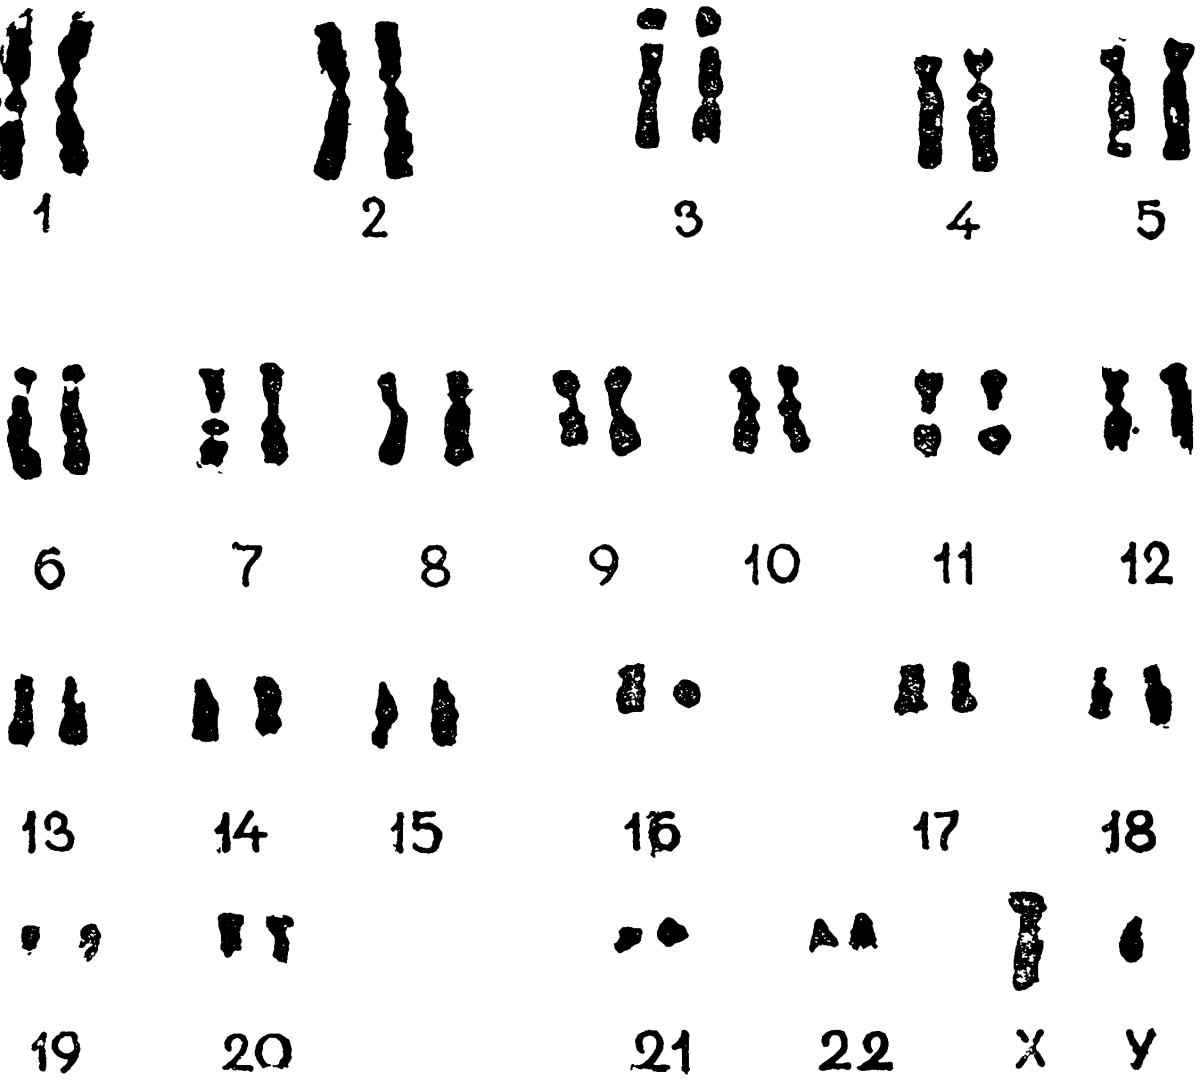 23 хромосомы у человека в клетках. Нормальный кариотип человека 46 хромосом. Кариограмма хромосом здорового человека. Хромосомный набор кариотип человека. Хромосомная карта кариотип.